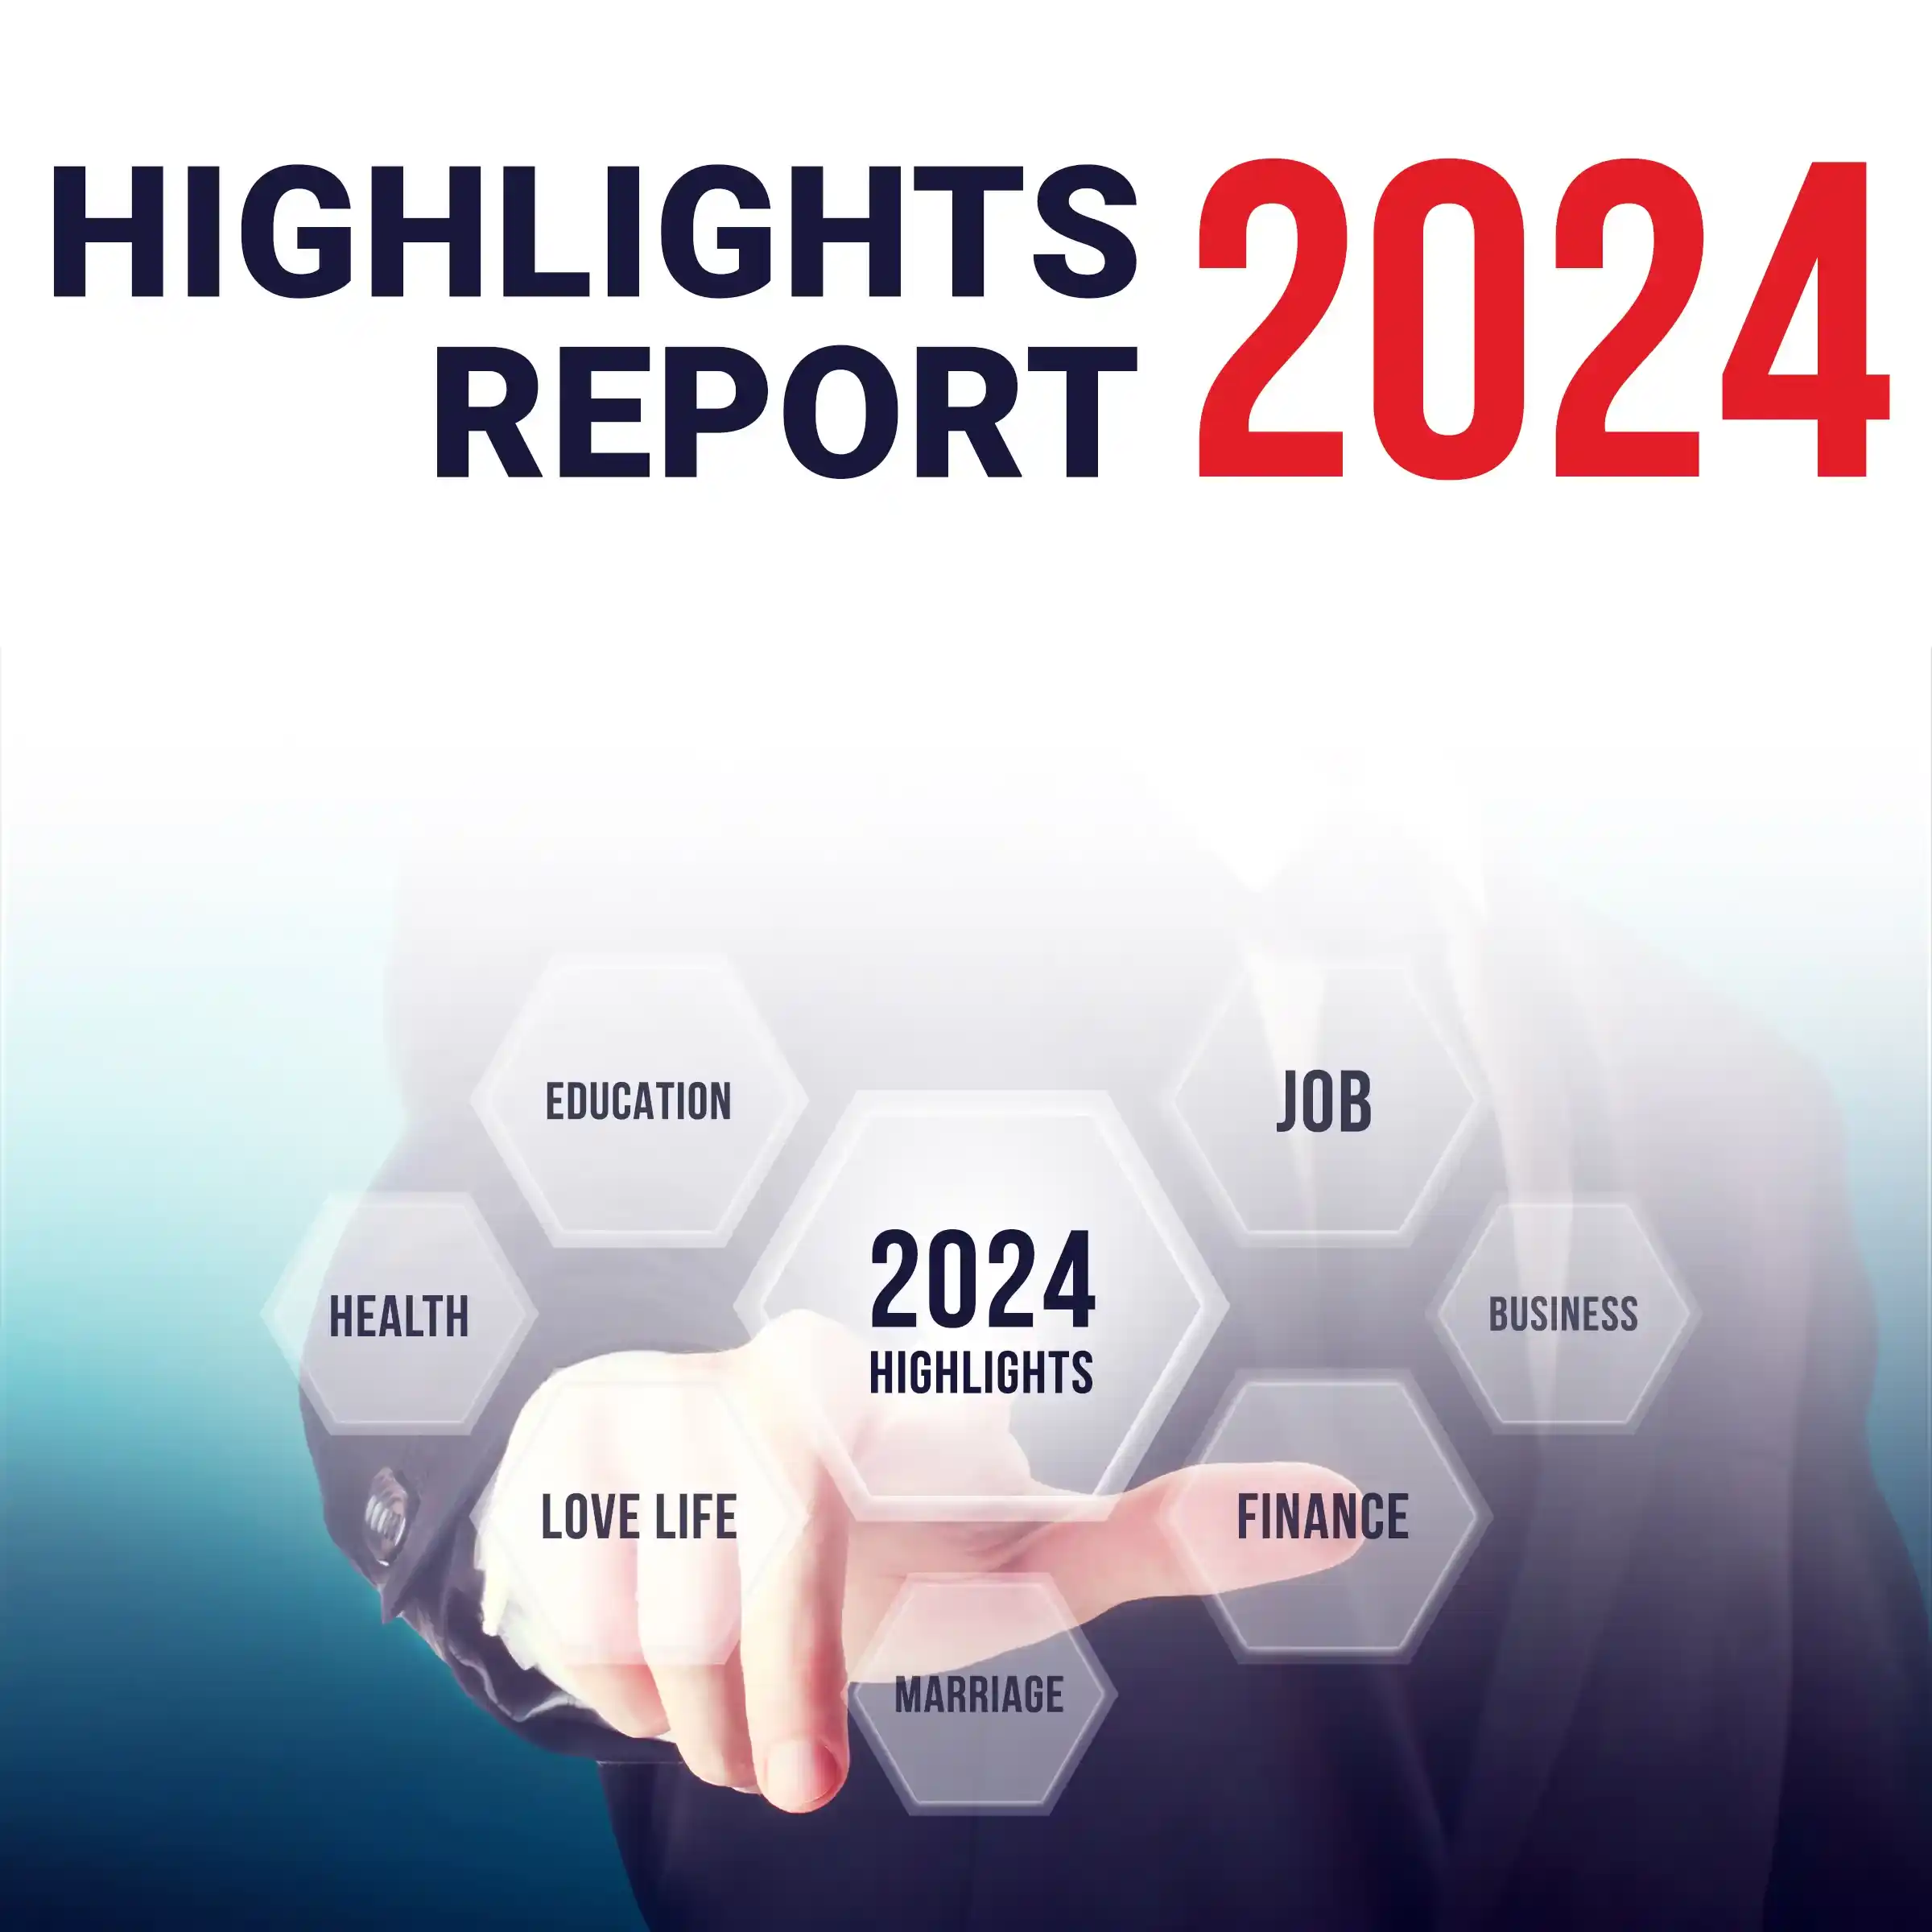 2024 Highlights Report – Acharya Bhattacharya